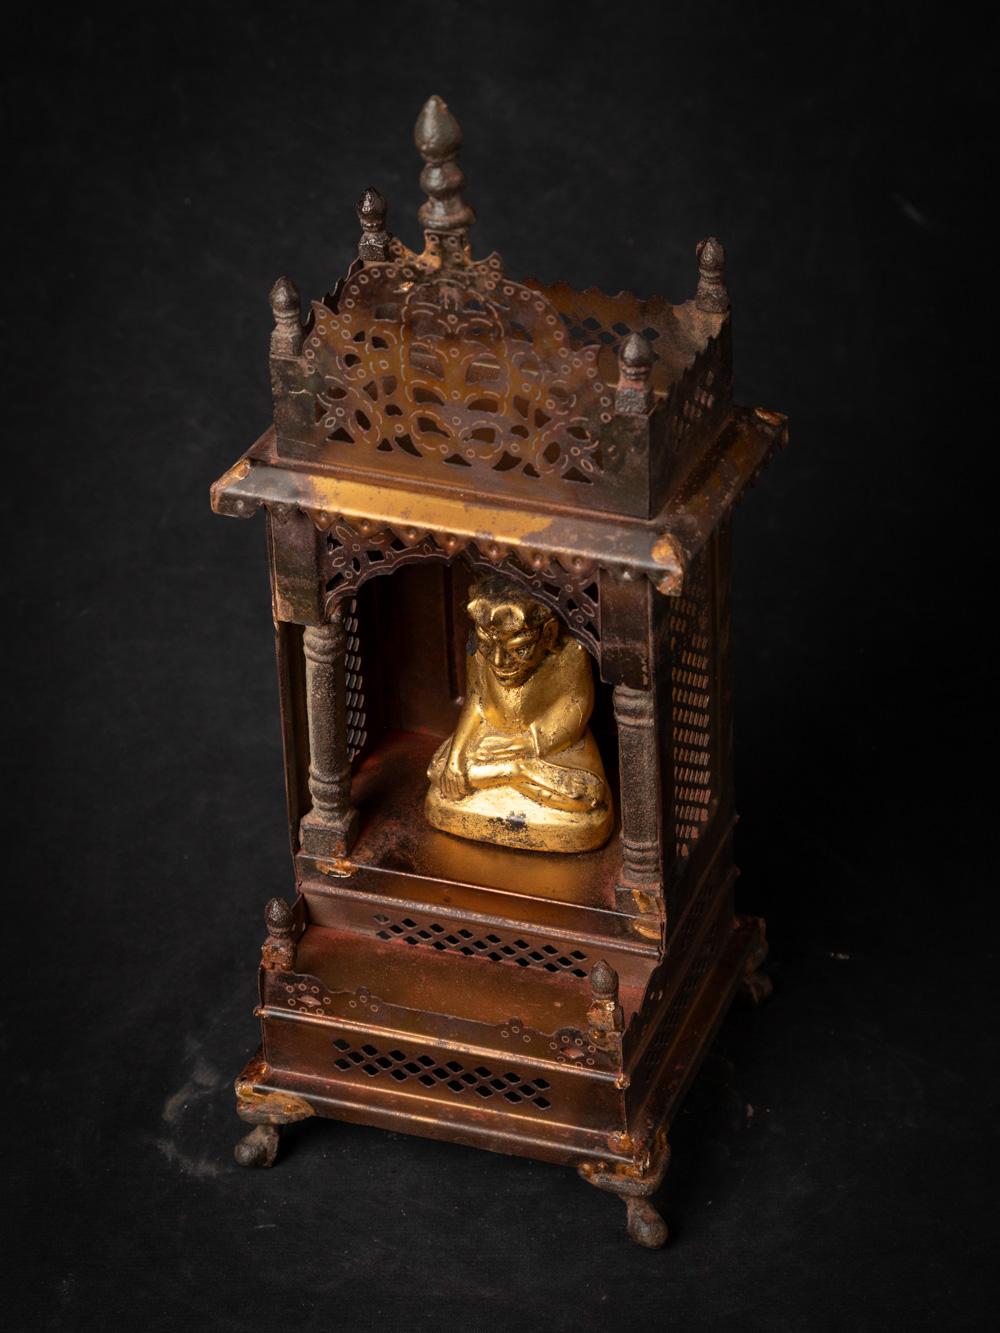 Alter Metalltempel mit antiker hölzerner Buddha-Statue
MATERIAL: Metall
36,8 cm hoch
15 cm breit und 14,7 cm tief
Der Tempel stammt ursprünglich aus Nepal
Der vergoldete Buddha stammt aus Birma und ist aus dem 19.
Gewicht: 1,2 kg
Mit Ursprung in